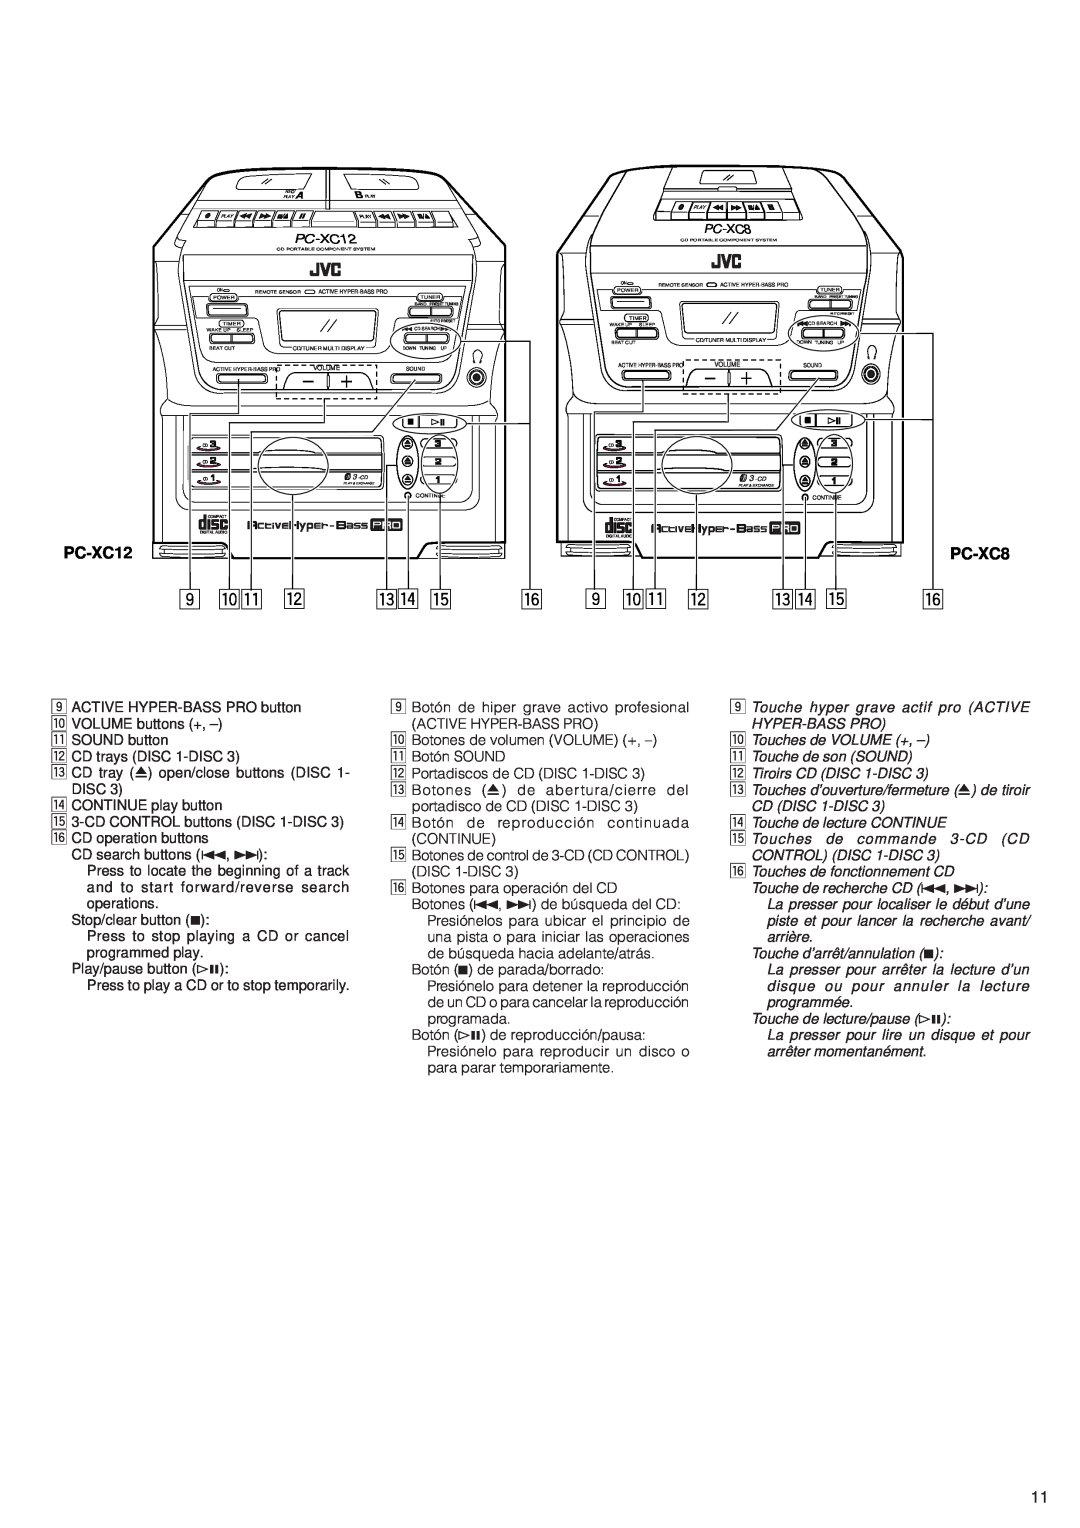 JVC PC-XC12 manual pq w, er t, PC-XC8 